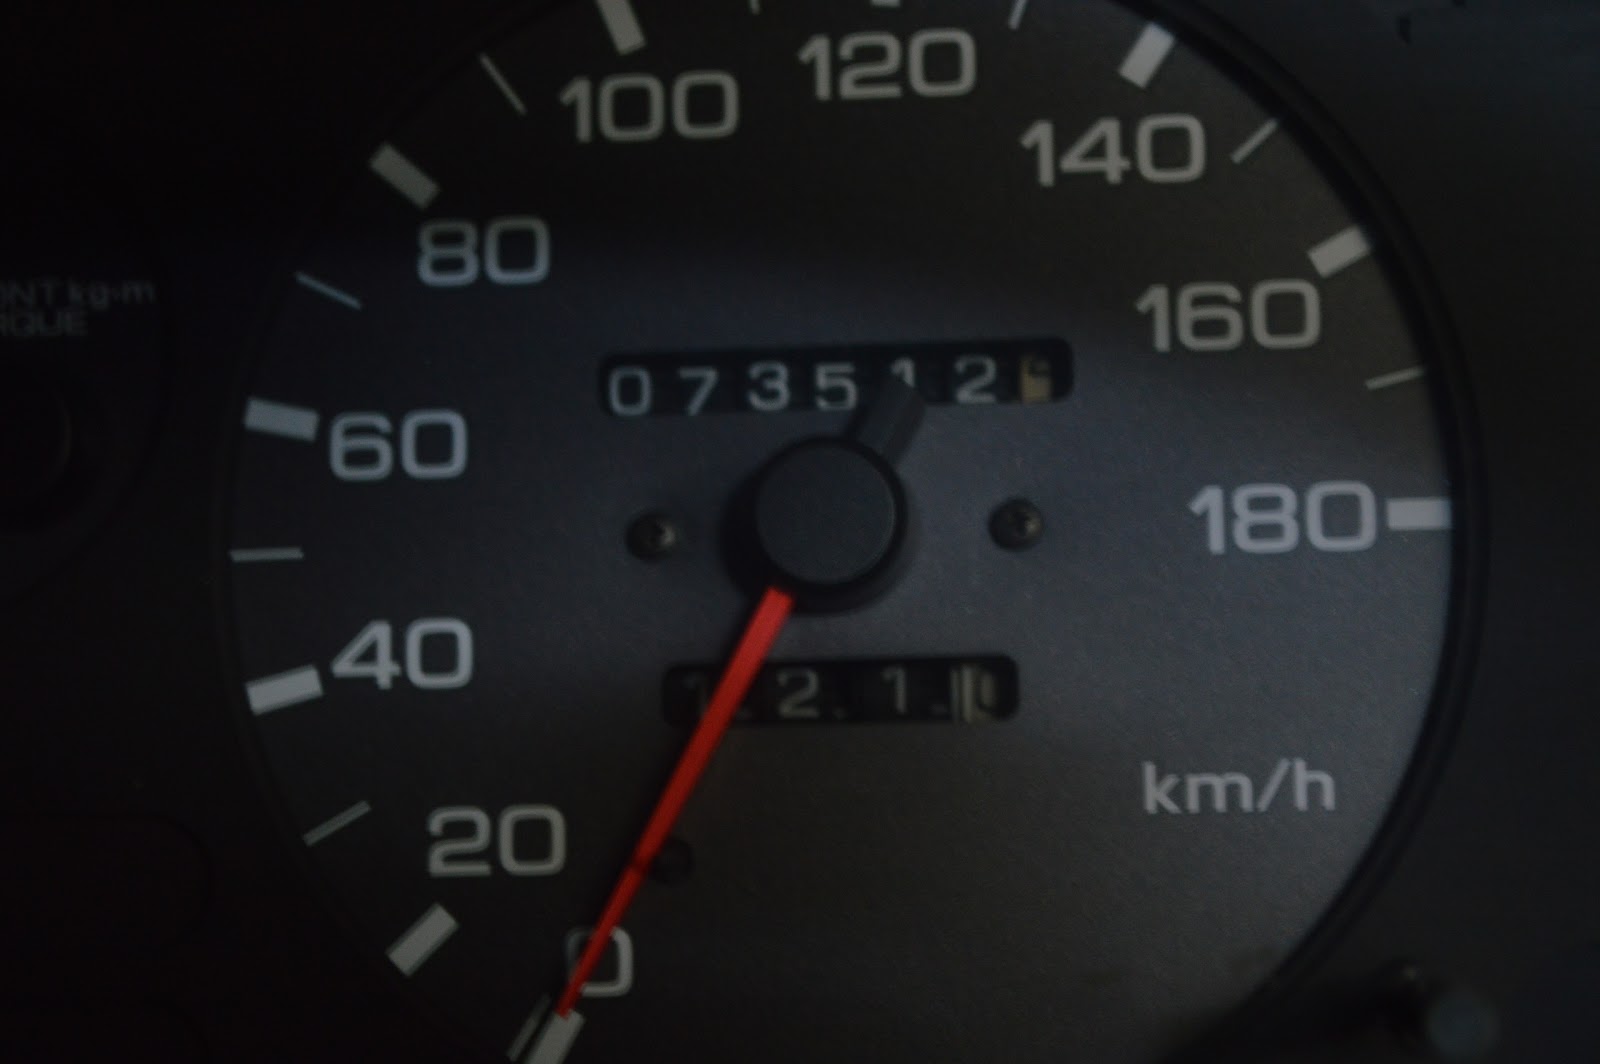 Factory 180 km/hr speedometer in a Nissan Skyline GT-R R32